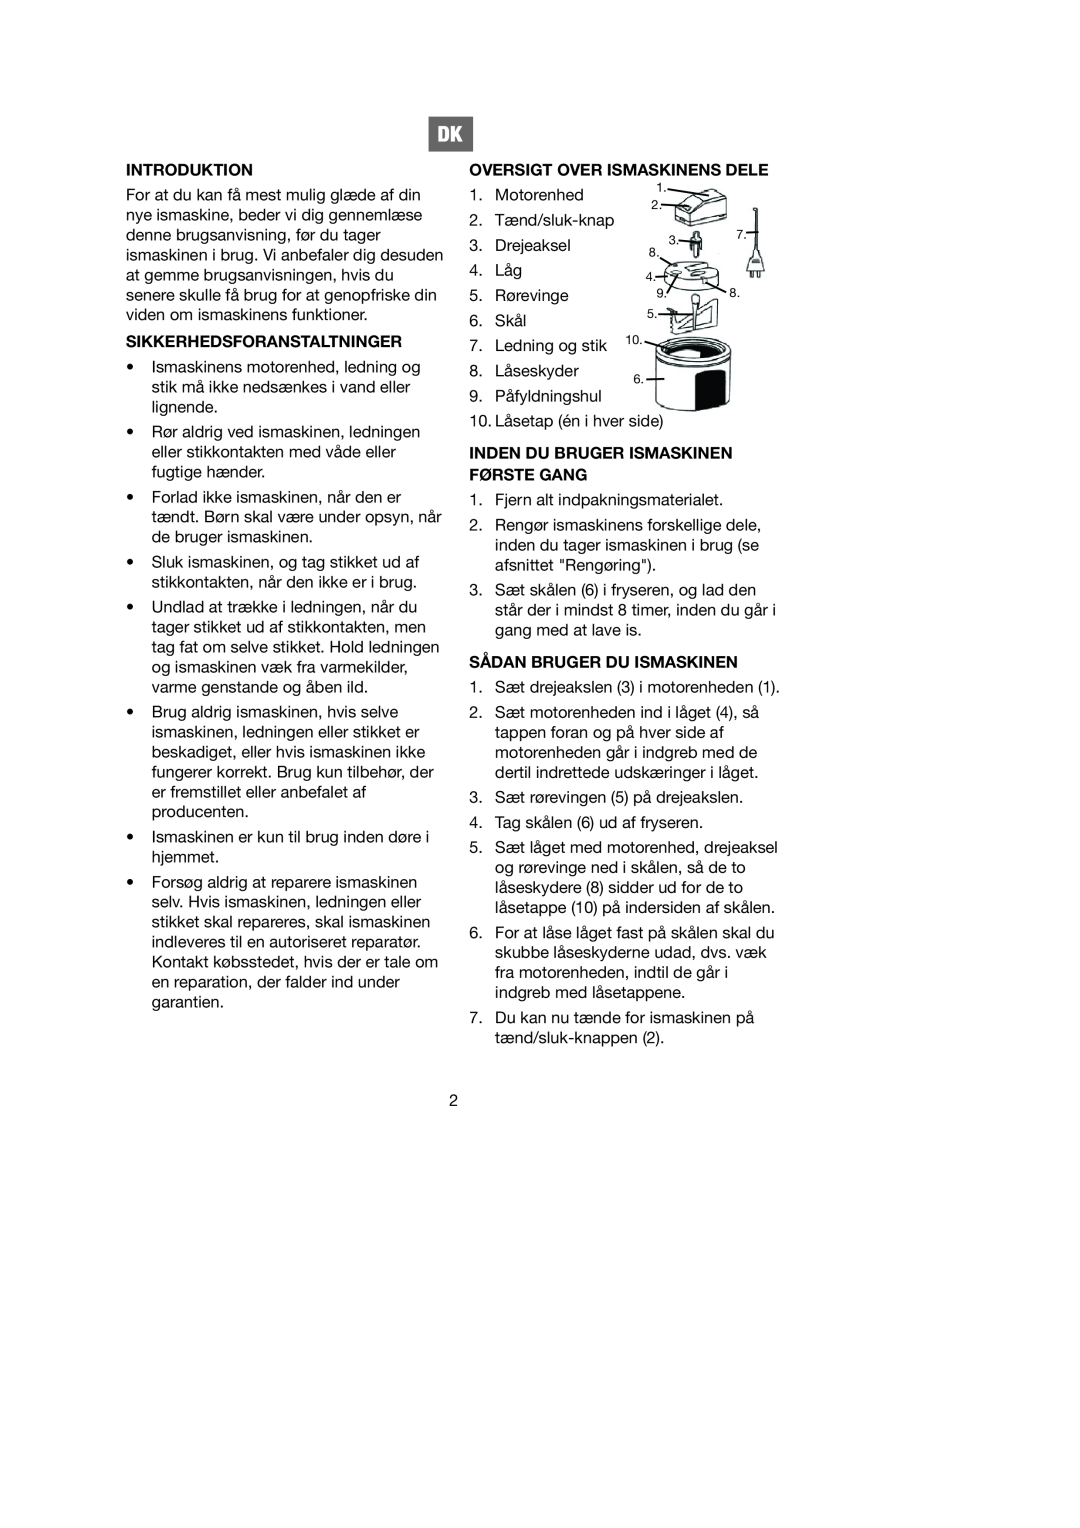 Melissa 746-080 manual Introduktion, Sikkerhedsforanstaltninger, Oversigt Over Ismaskinens Dele, Sådan Bruger Du Ismaskinen 